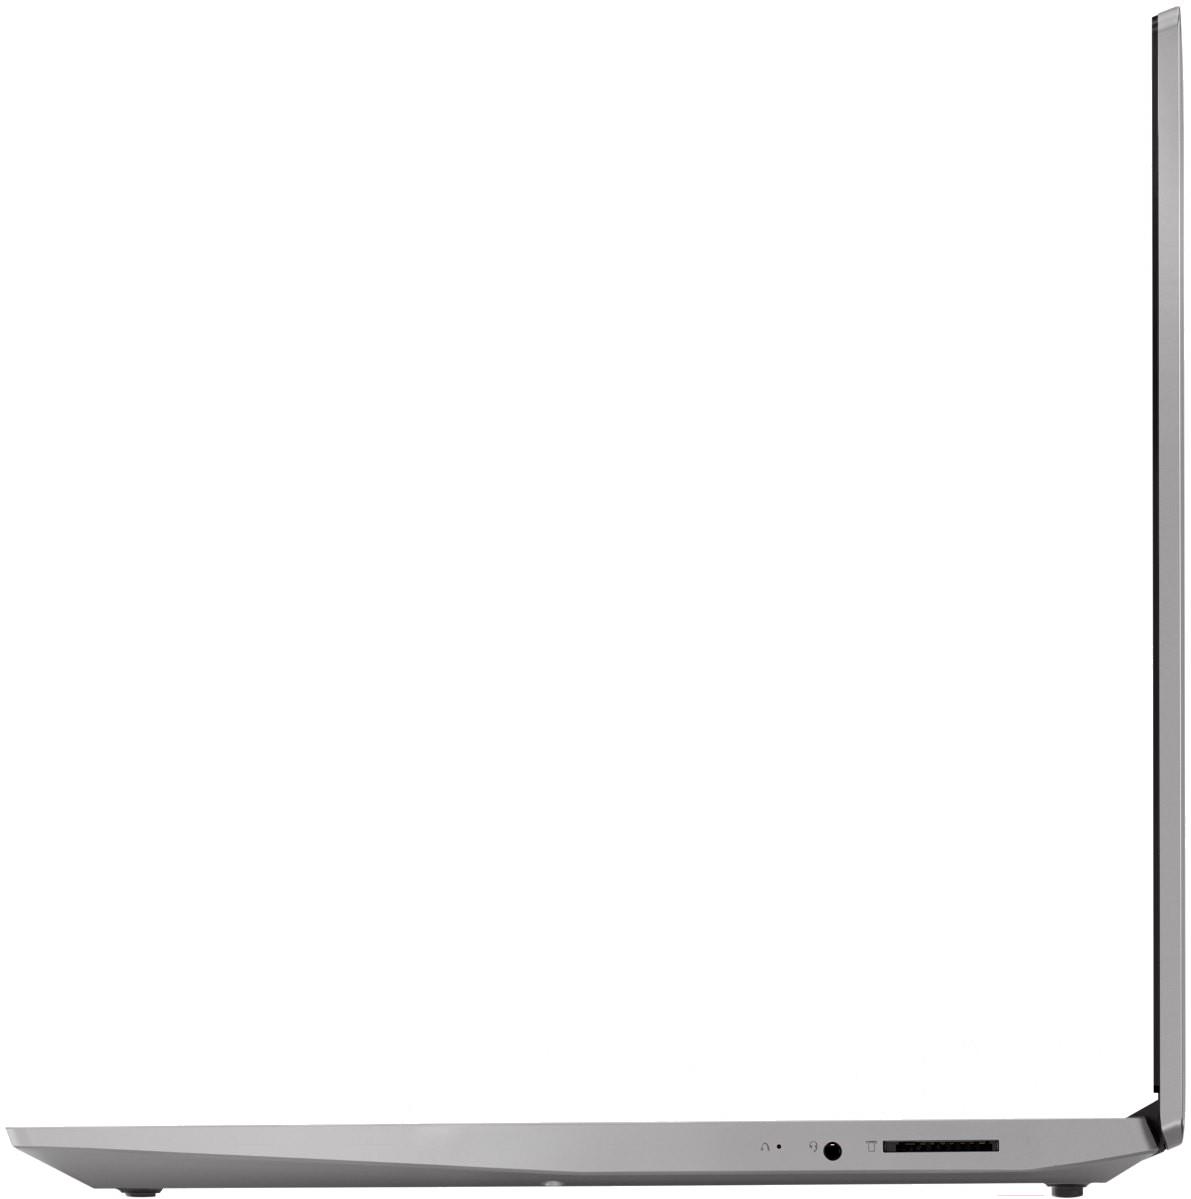 Купить Ноутбук Lenovo S145 15iwl